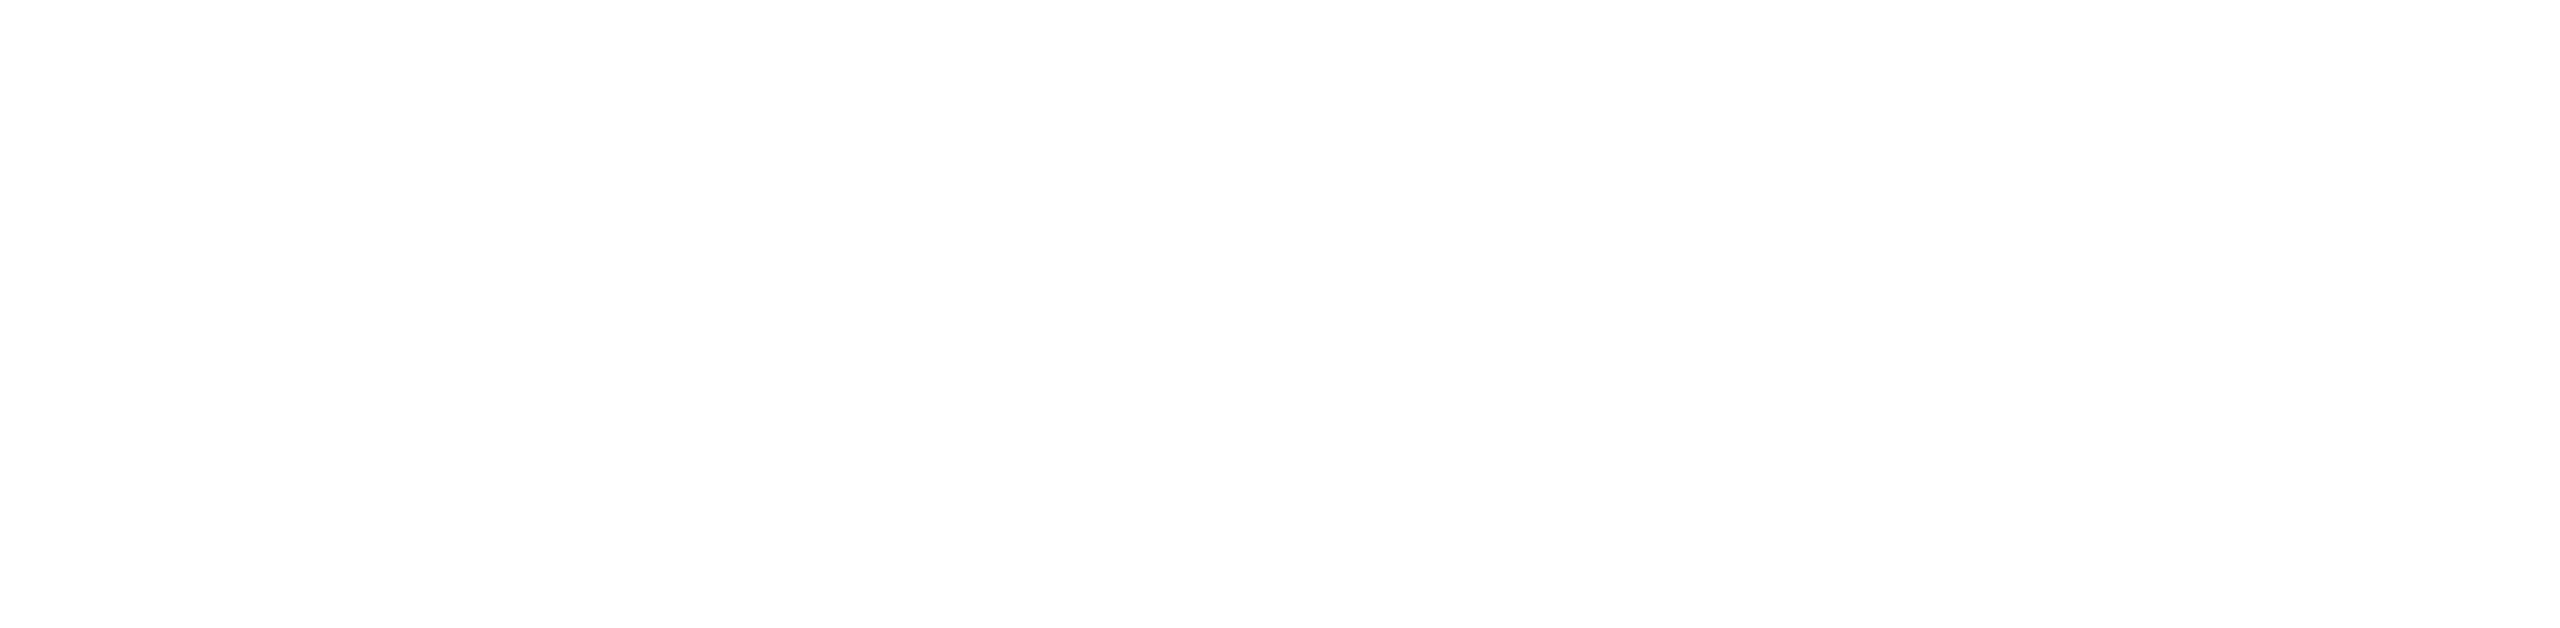 jacobsen byg logo